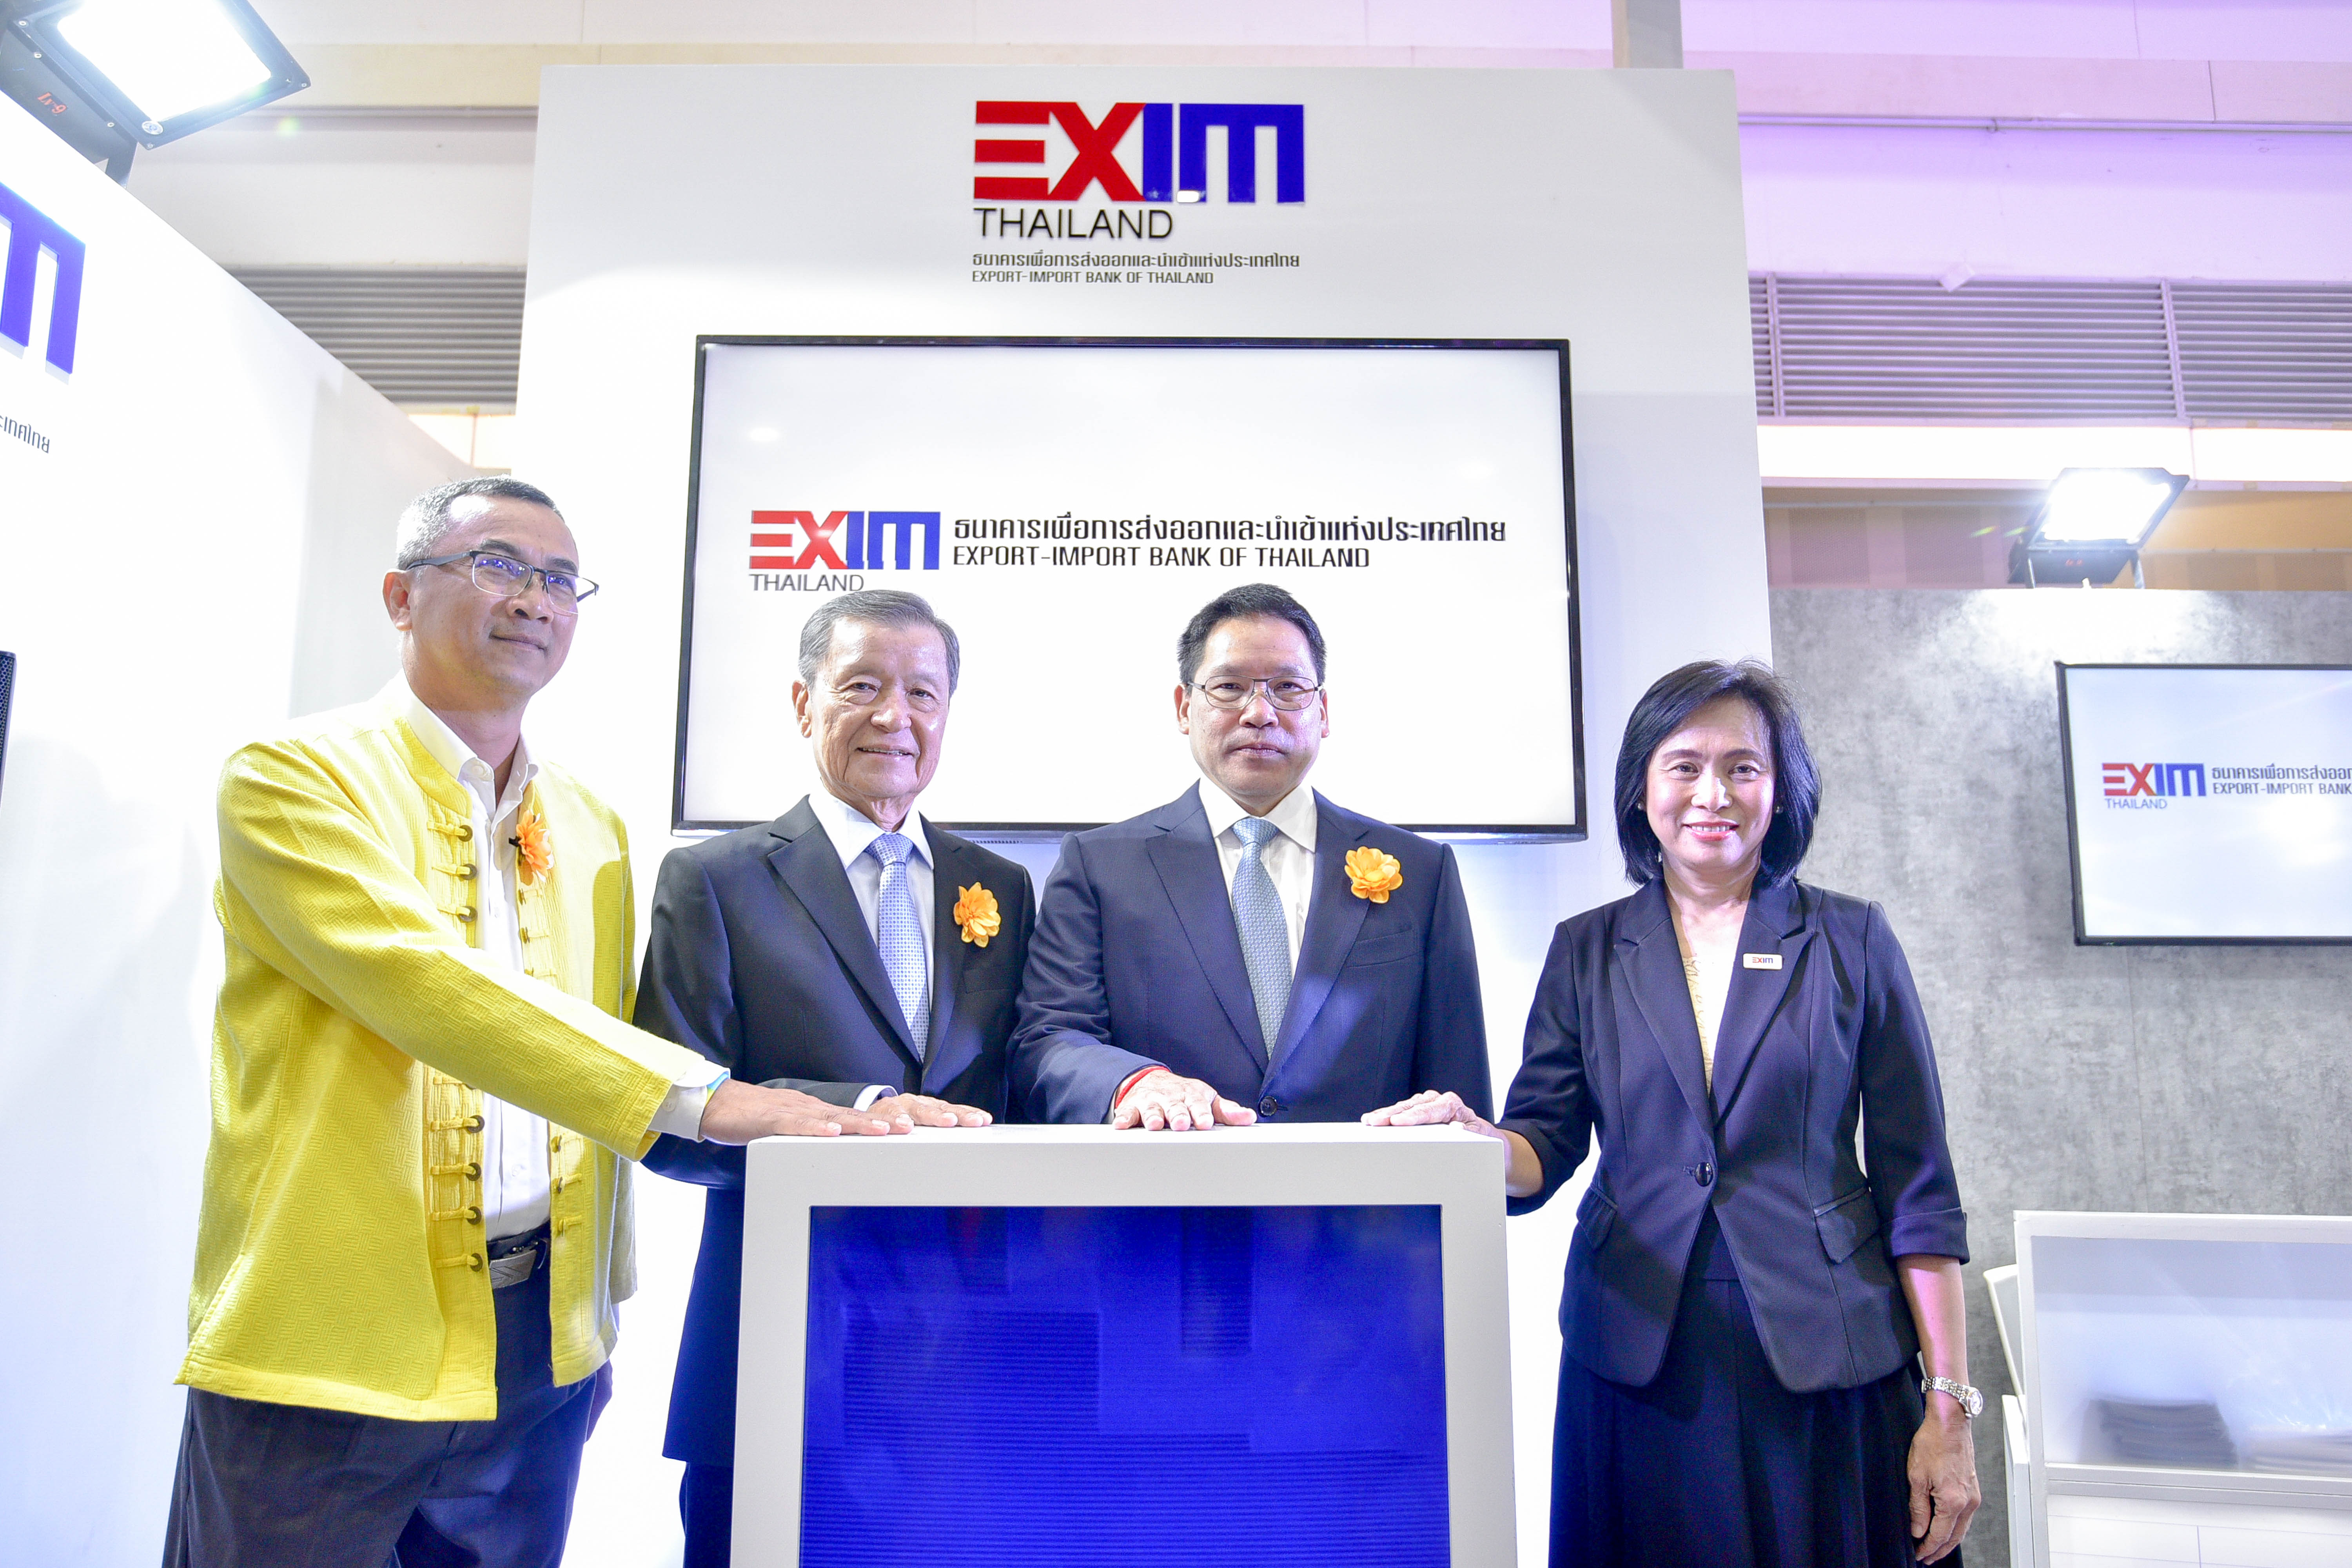 EXIM BANK ร่วมออกบูทในงานมหกรรมการเงินเชียงใหม่ ครั้งที่ 14